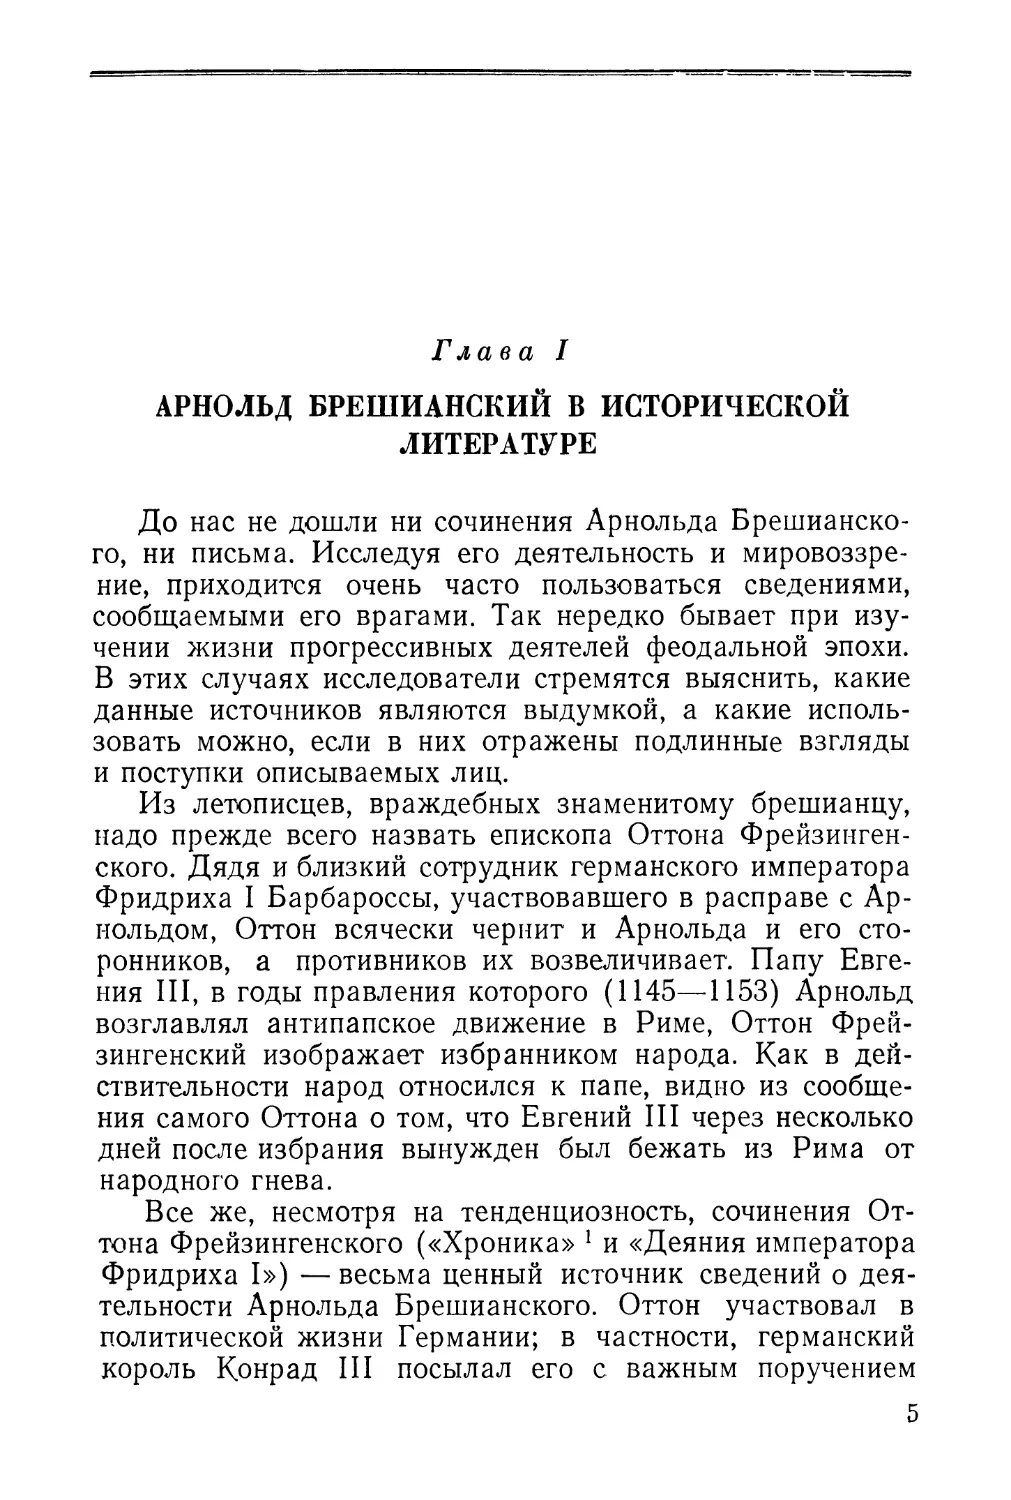 Глава I. Арнольд Брешианский в исторической литературе